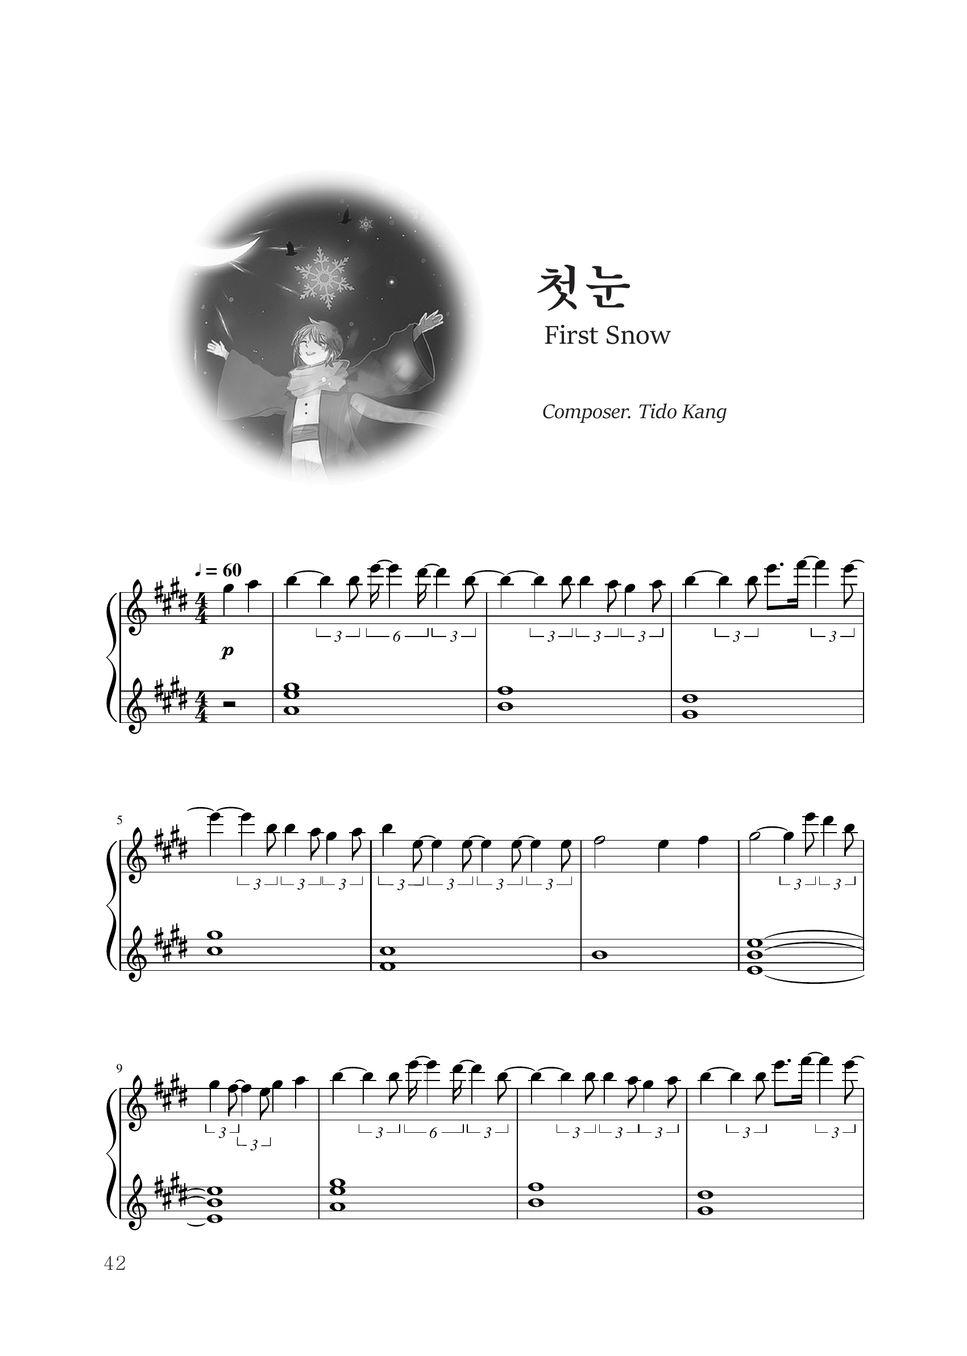 Tido Kang - First Snow 楽譜